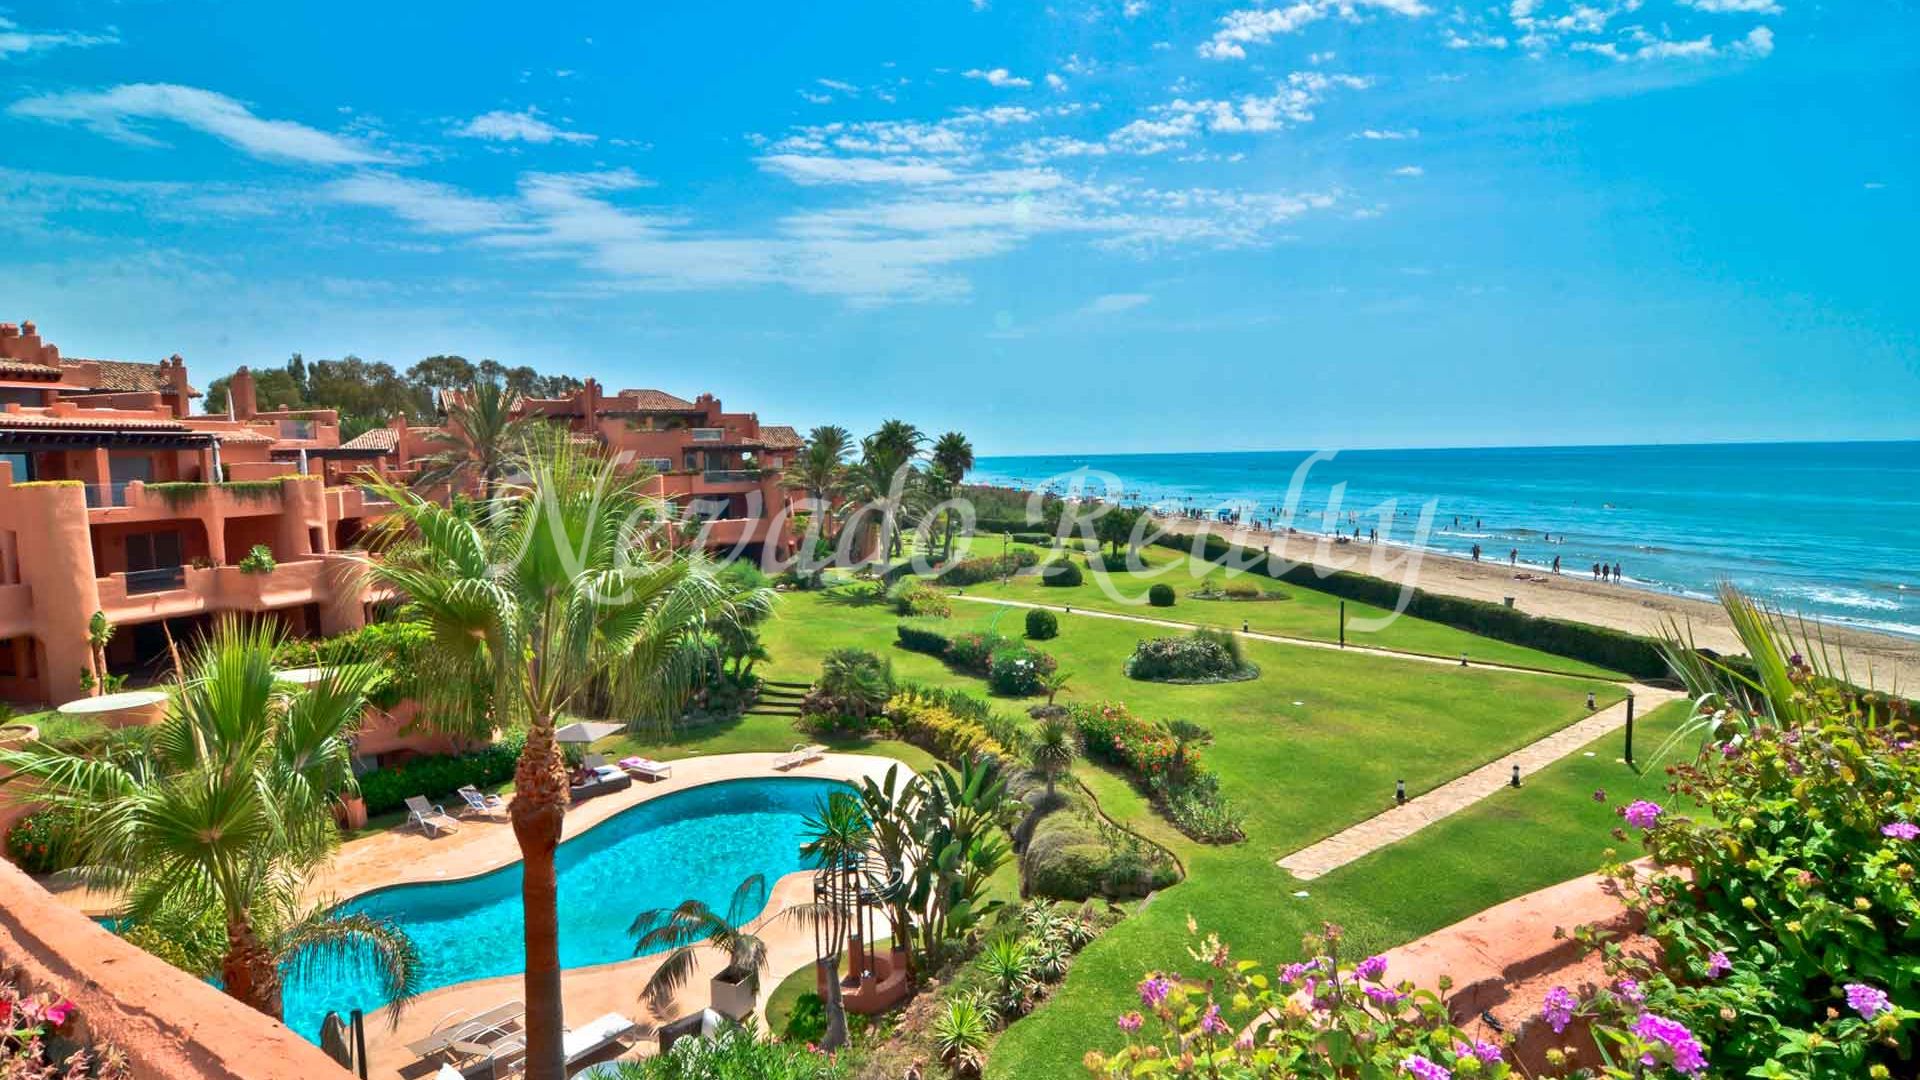 													Espectacular ático de lujo a la venta en primera línea de playa en Marbella
											